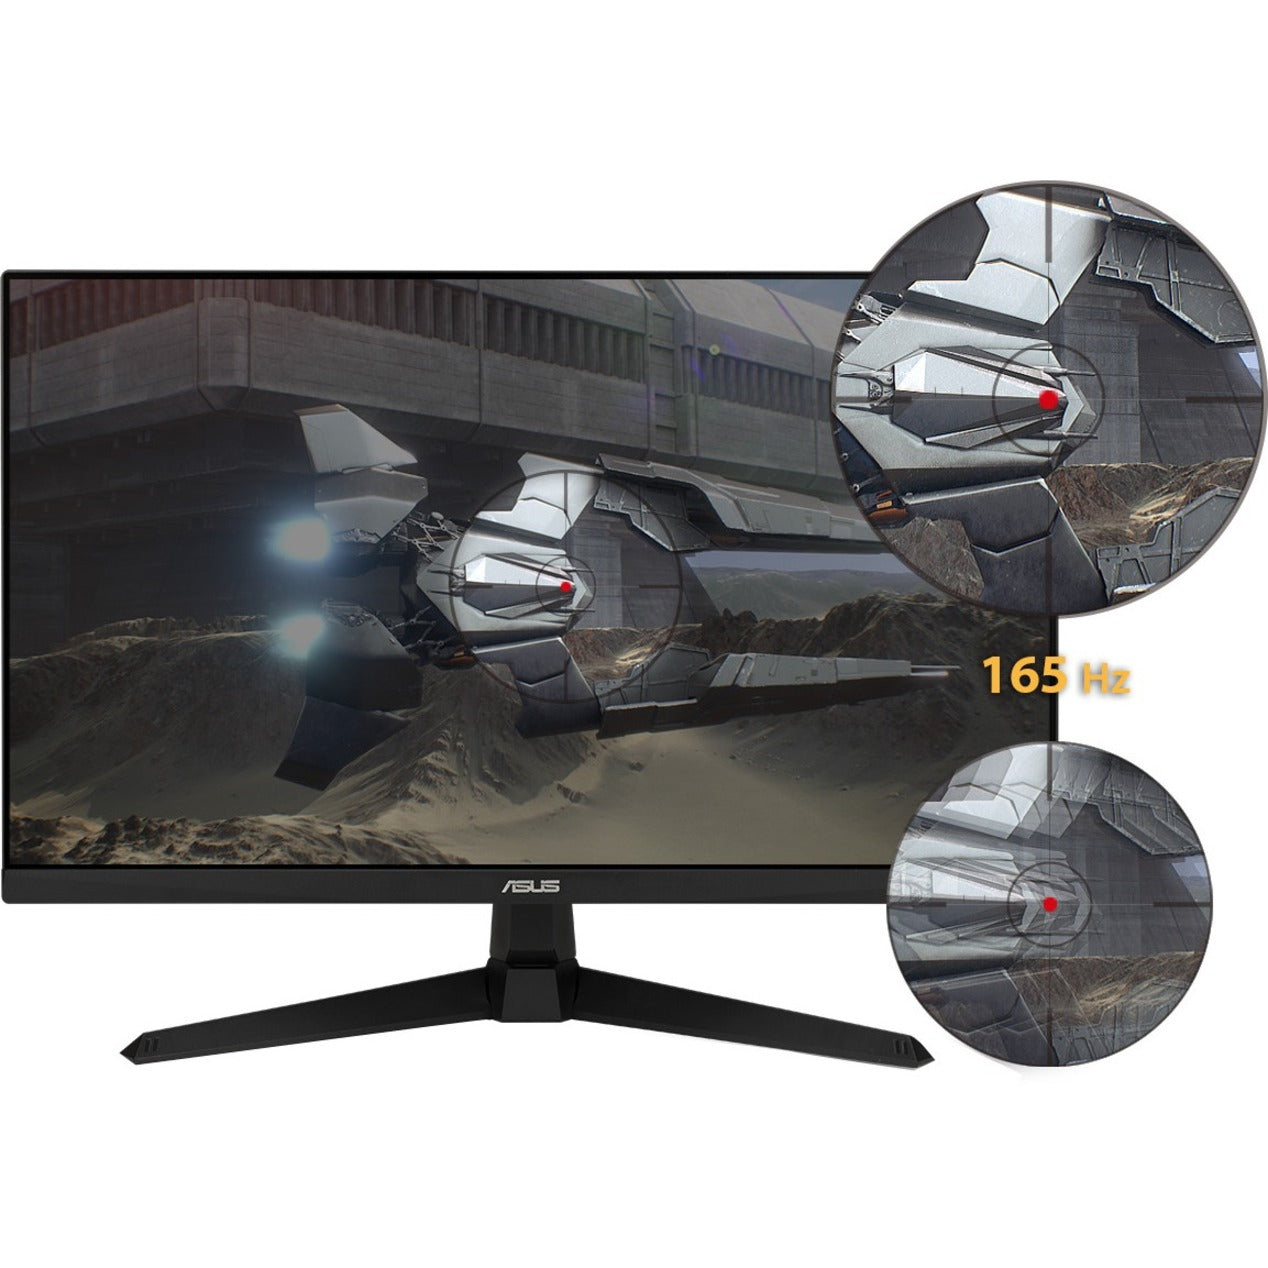 TUF VG277Q1A 27" Full HD Gaming LCD Monitor - 16:9 - Black